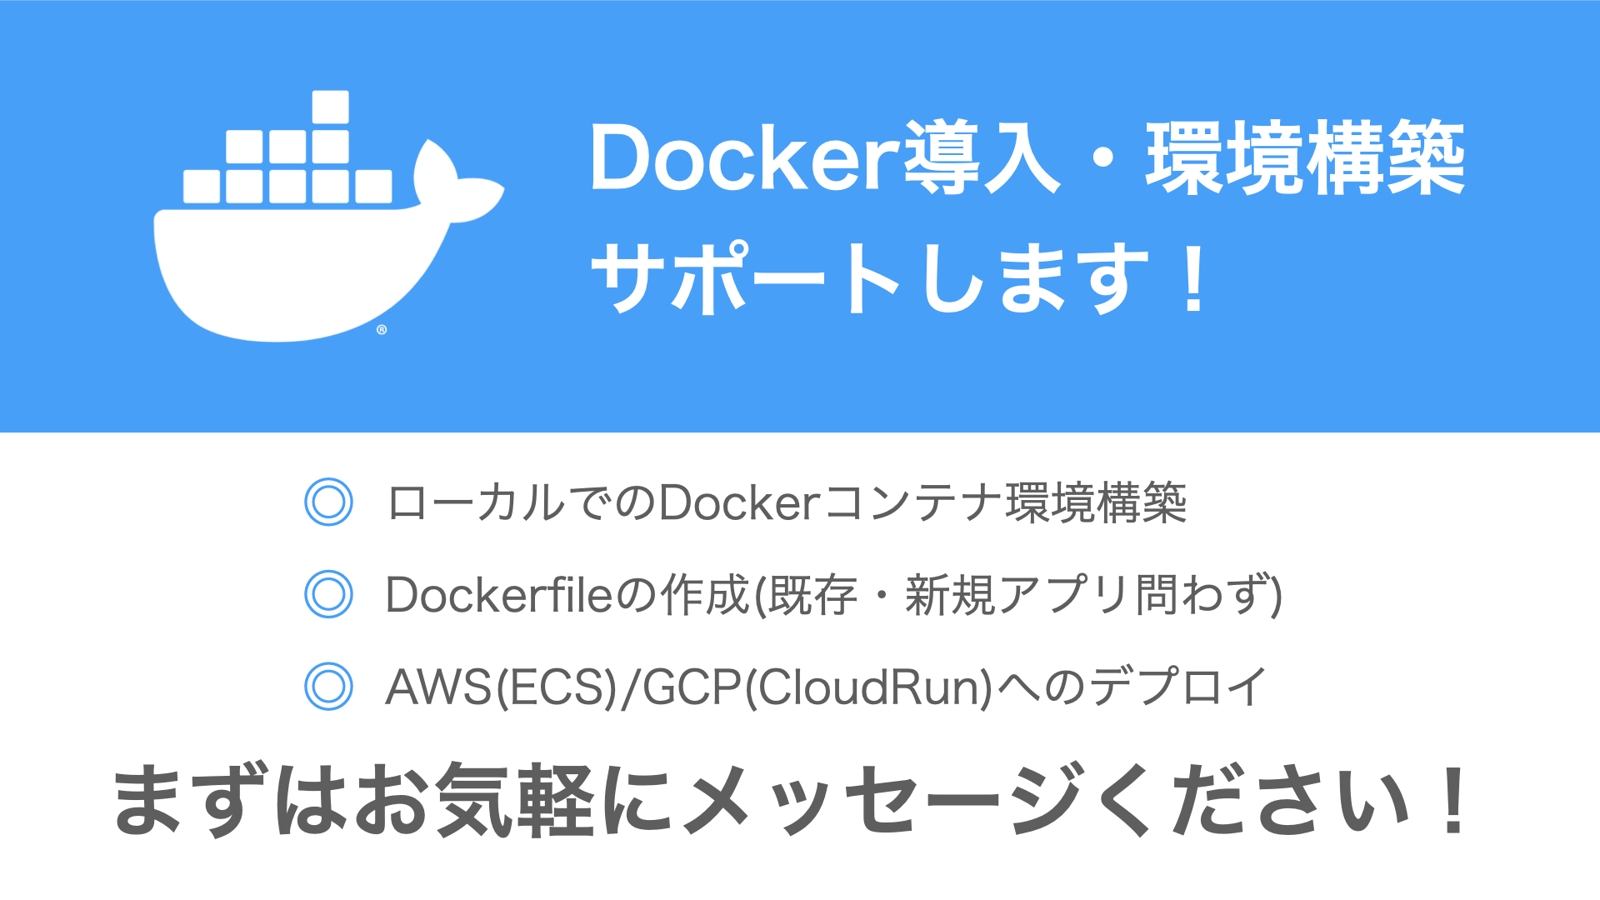 Dockerのサポートします！ローカル環境構築、Dockerfile作成、クラウドへのデプロイなど！-image1